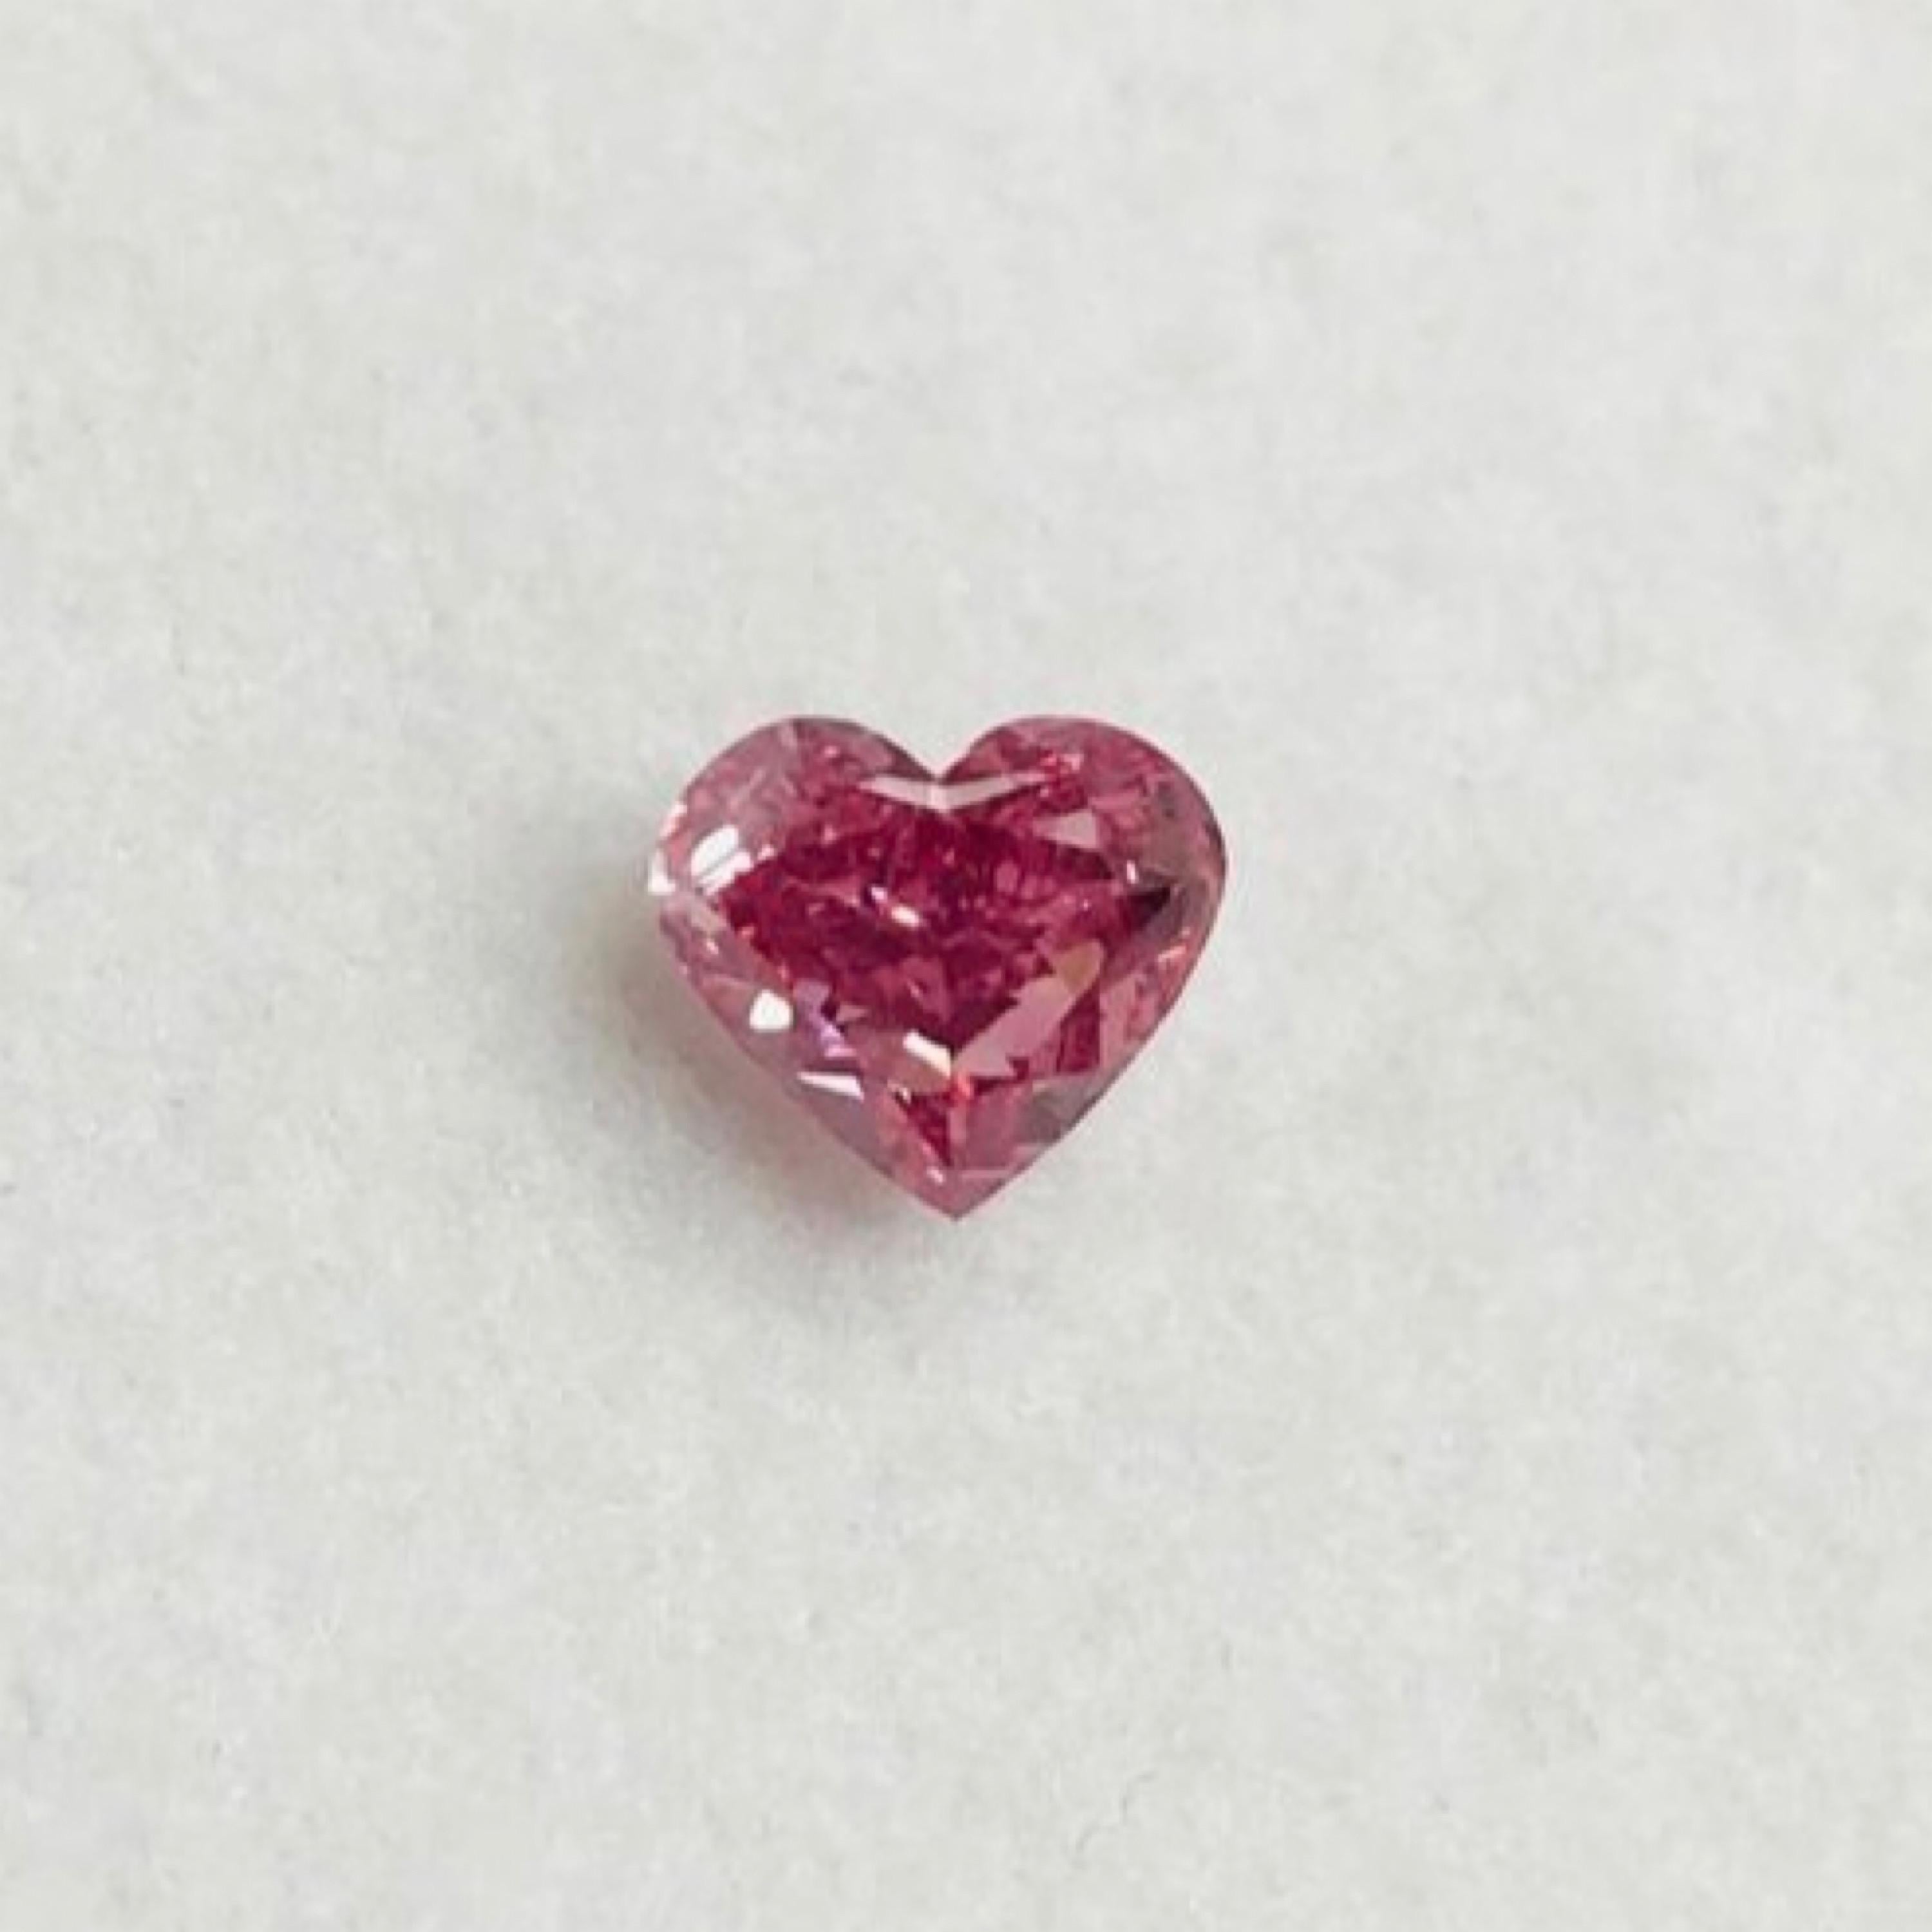 100 carat pink diamond price